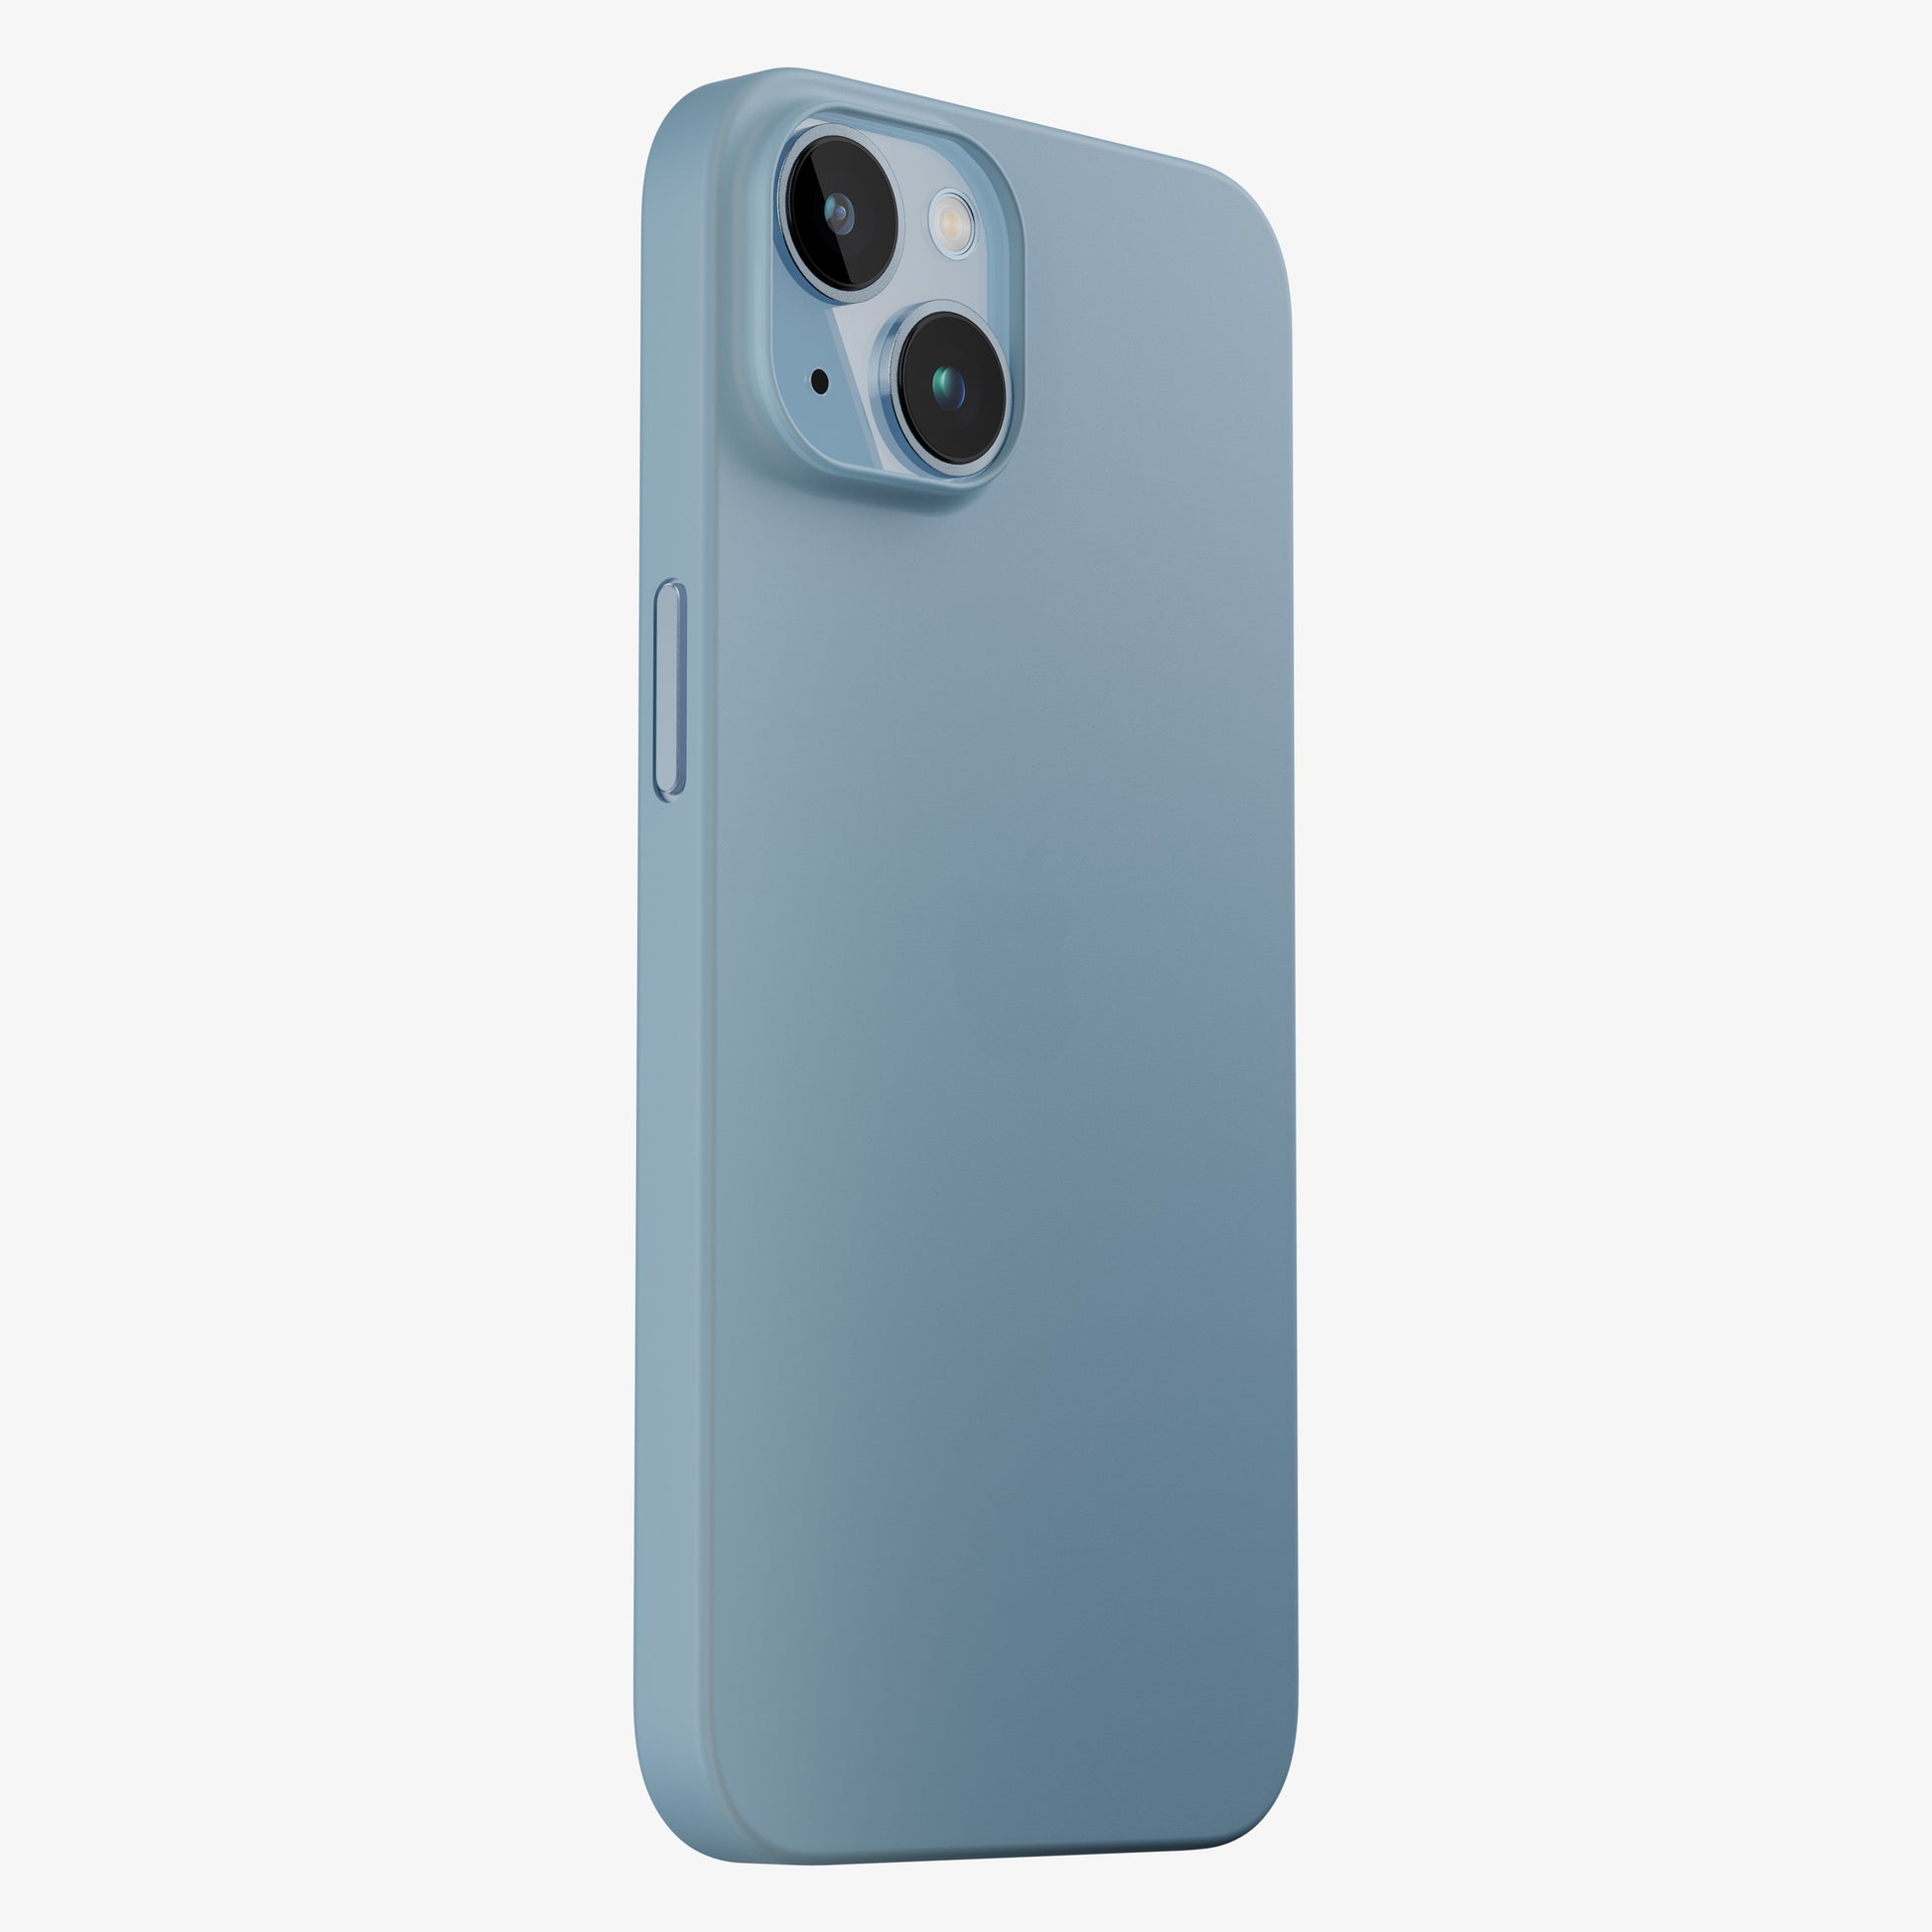 Coque bleue iPhone 14, 14 Pro, 14 Pro Max, 14 Plus - la plus fine du monde avec 0.33mm d'épaisseur